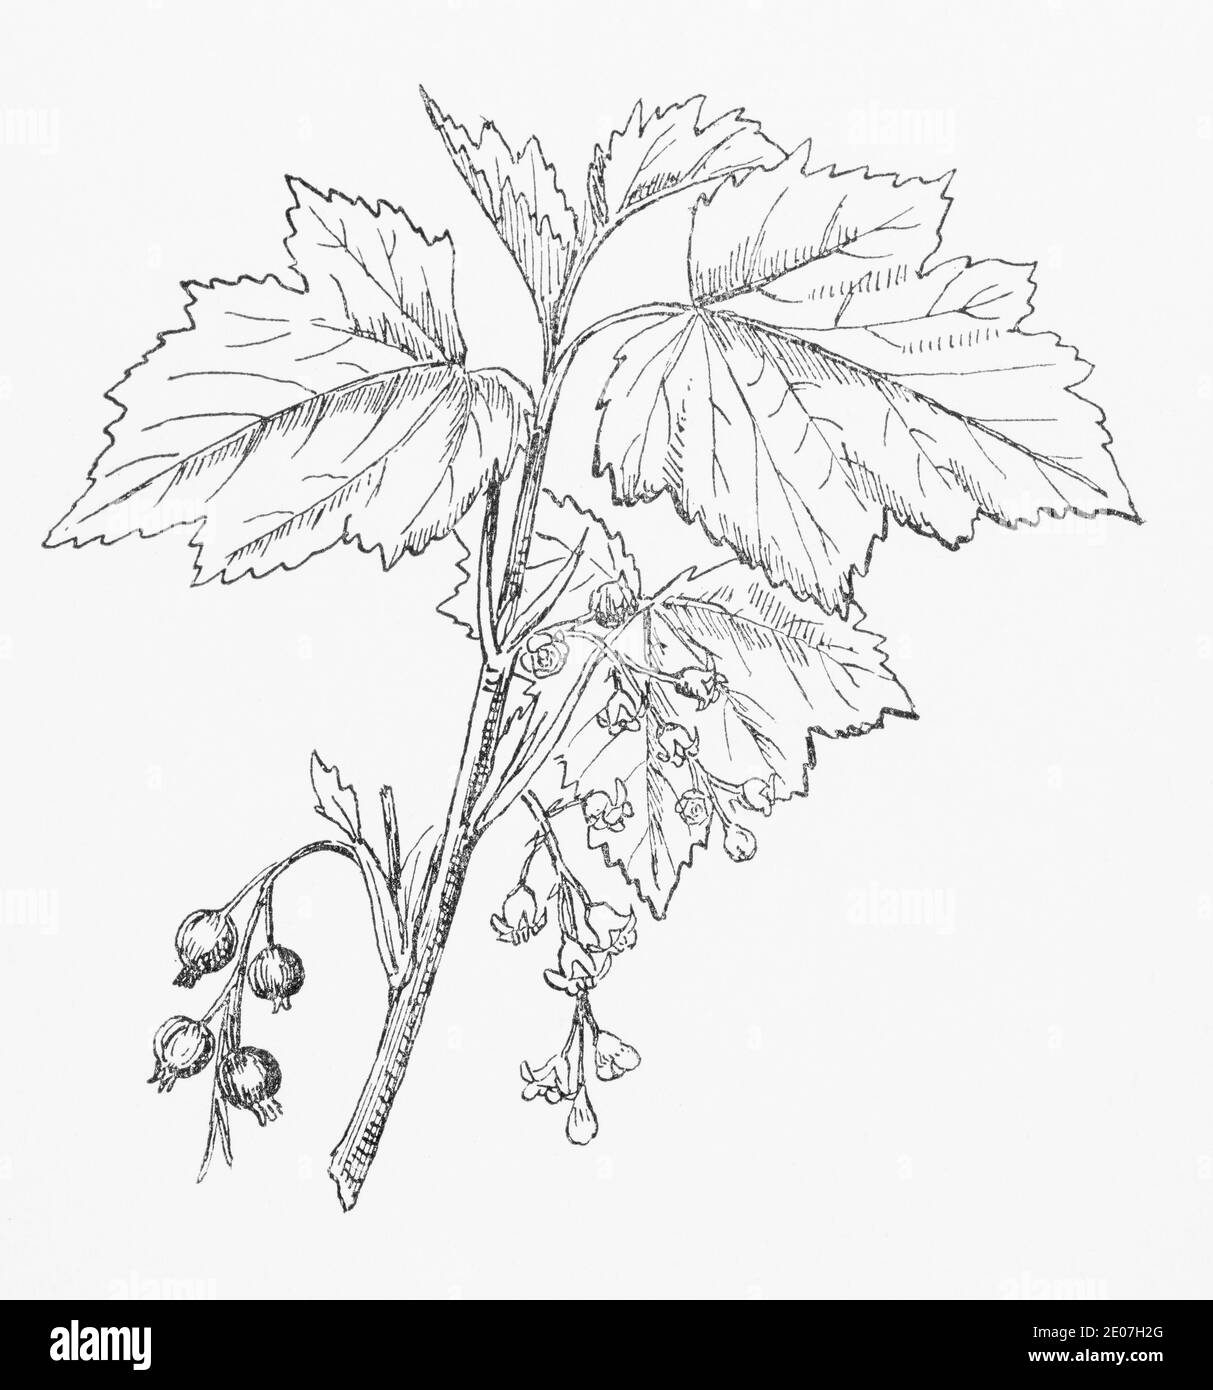 Antica illustrazione botanica incisione di ribes nero, ribes nero / Ribes nigrum. Pianta di erbe medicinali tradizionali. Vedere Note Foto Stock